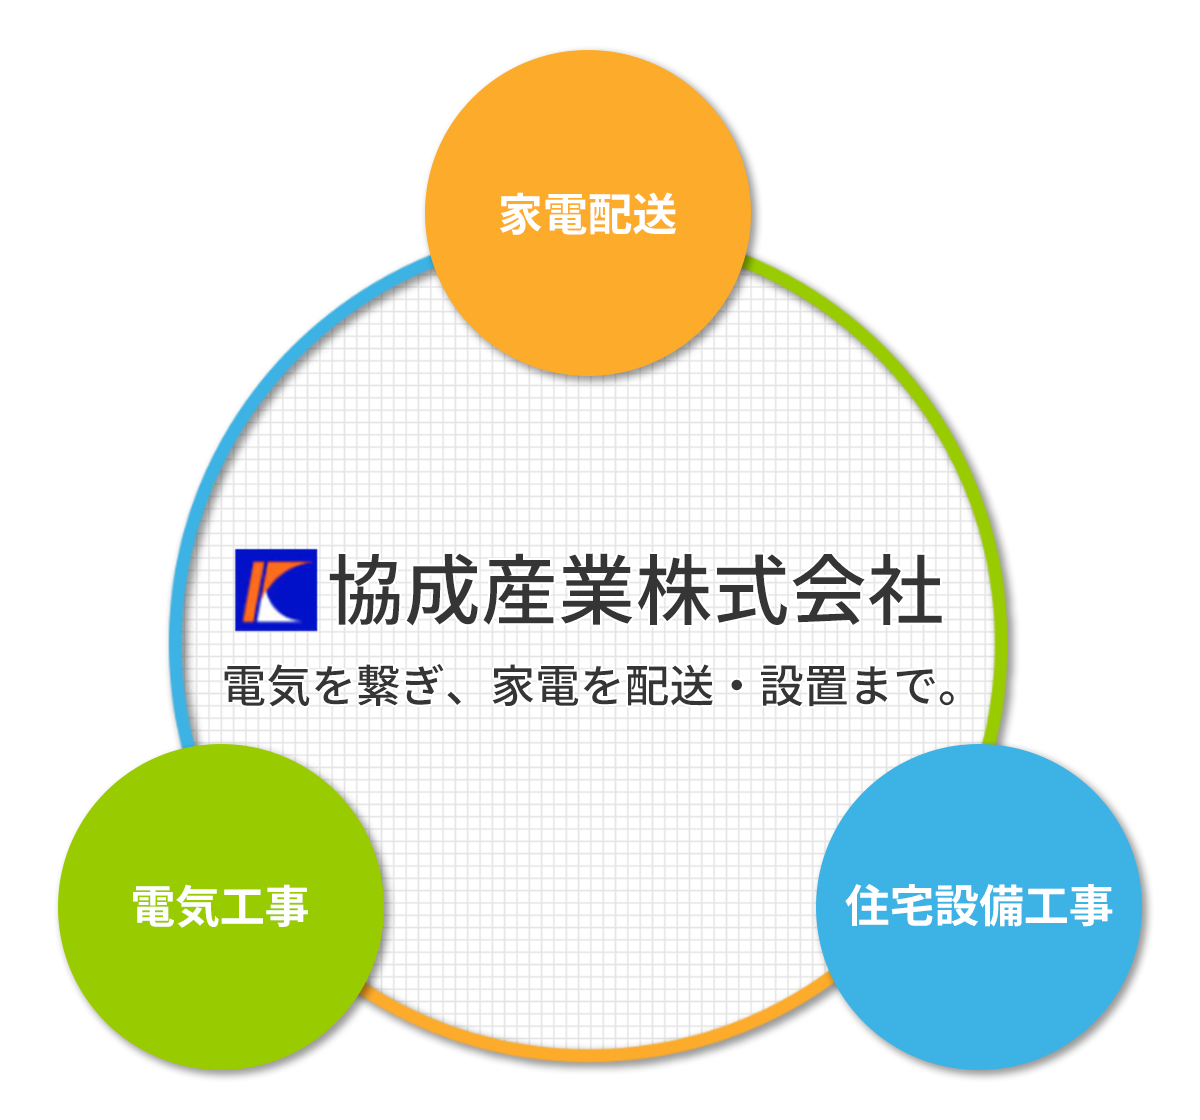 協成産業株式会社３つの事業の柱のイメージ図